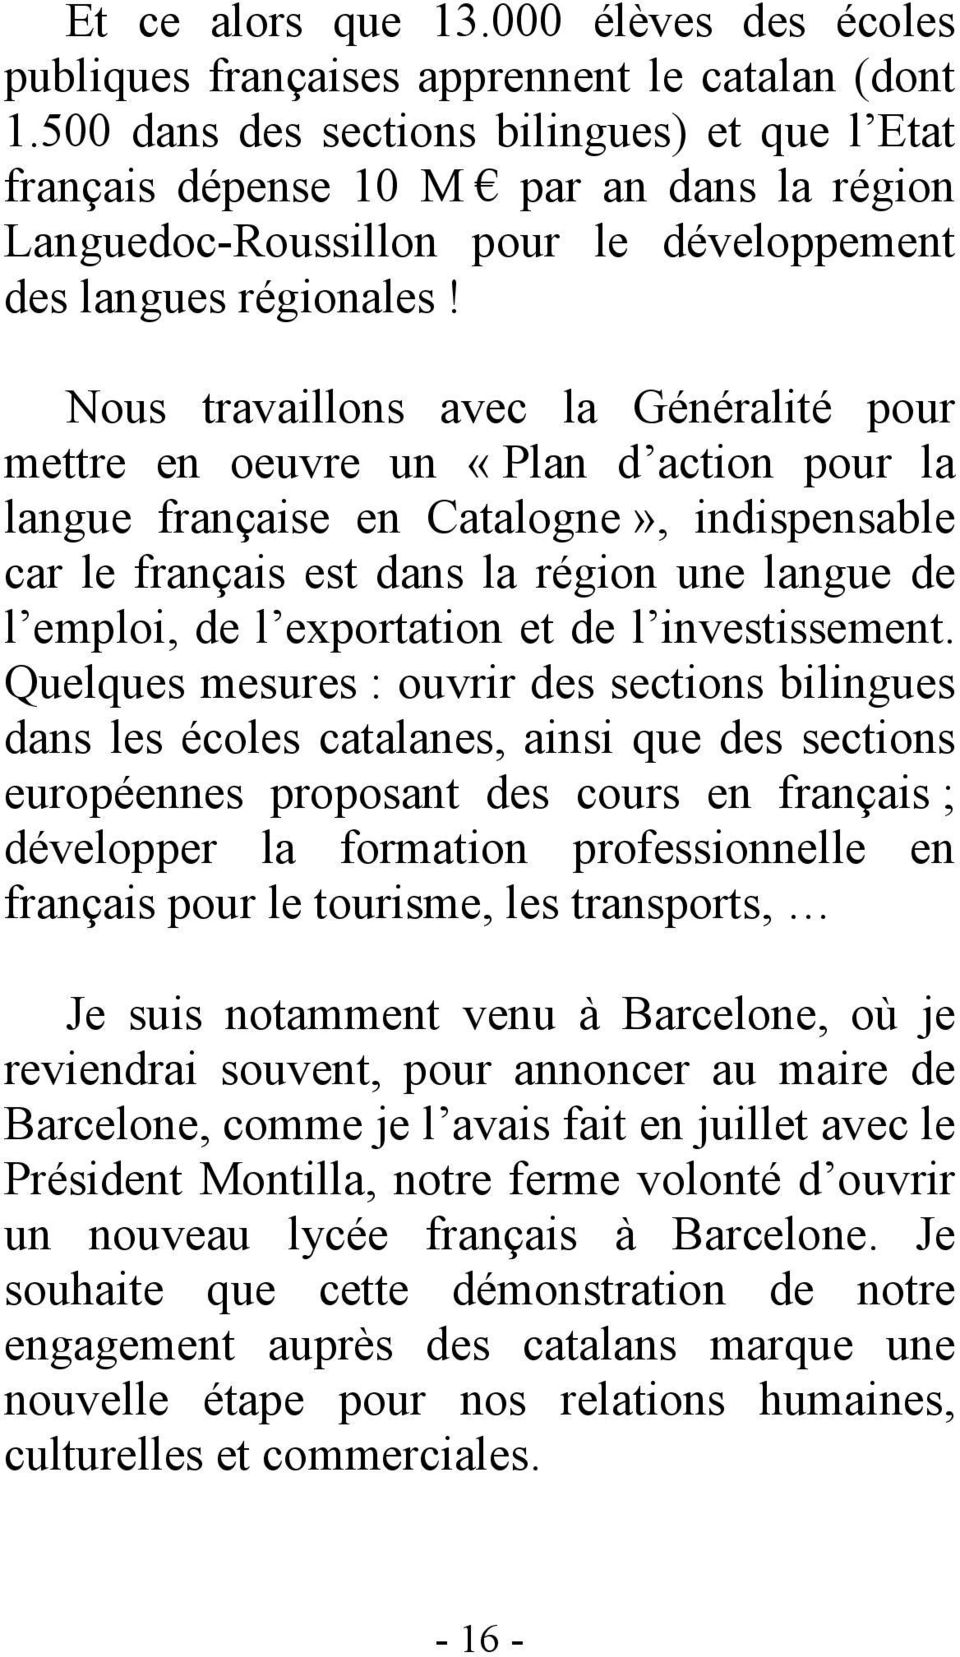 Nous travaillons avec la Généralité pour mettre en oeuvre un «Plan d action pour la langue française en Catalogne», indispensable car le français est dans la région une langue de l emploi, de l